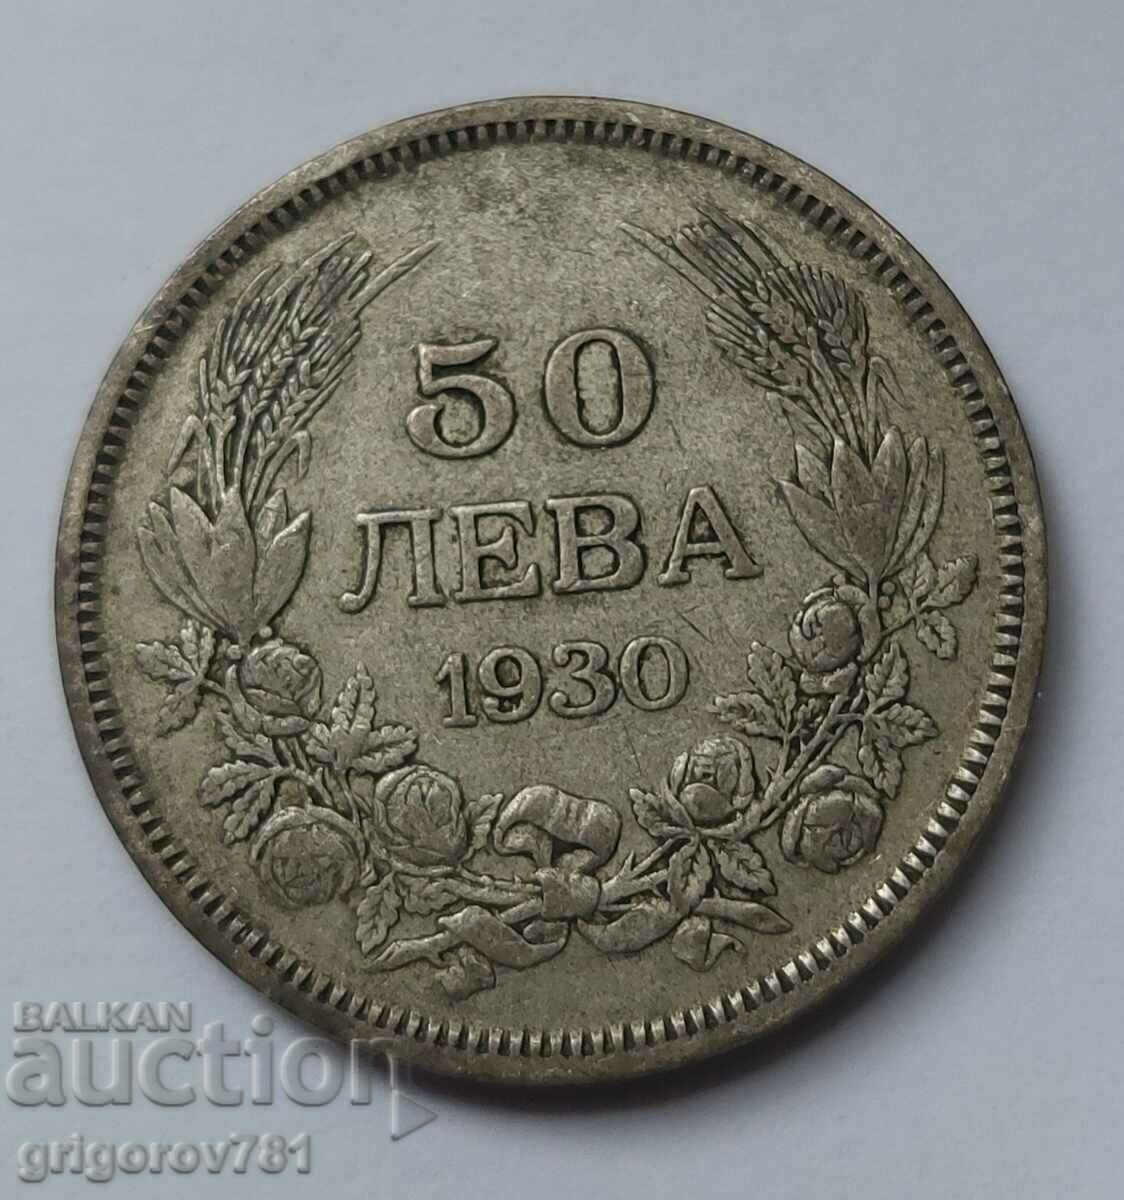 Ασήμι 50 λέβα Βουλγαρία 1930 - ασημένιο νόμισμα #42